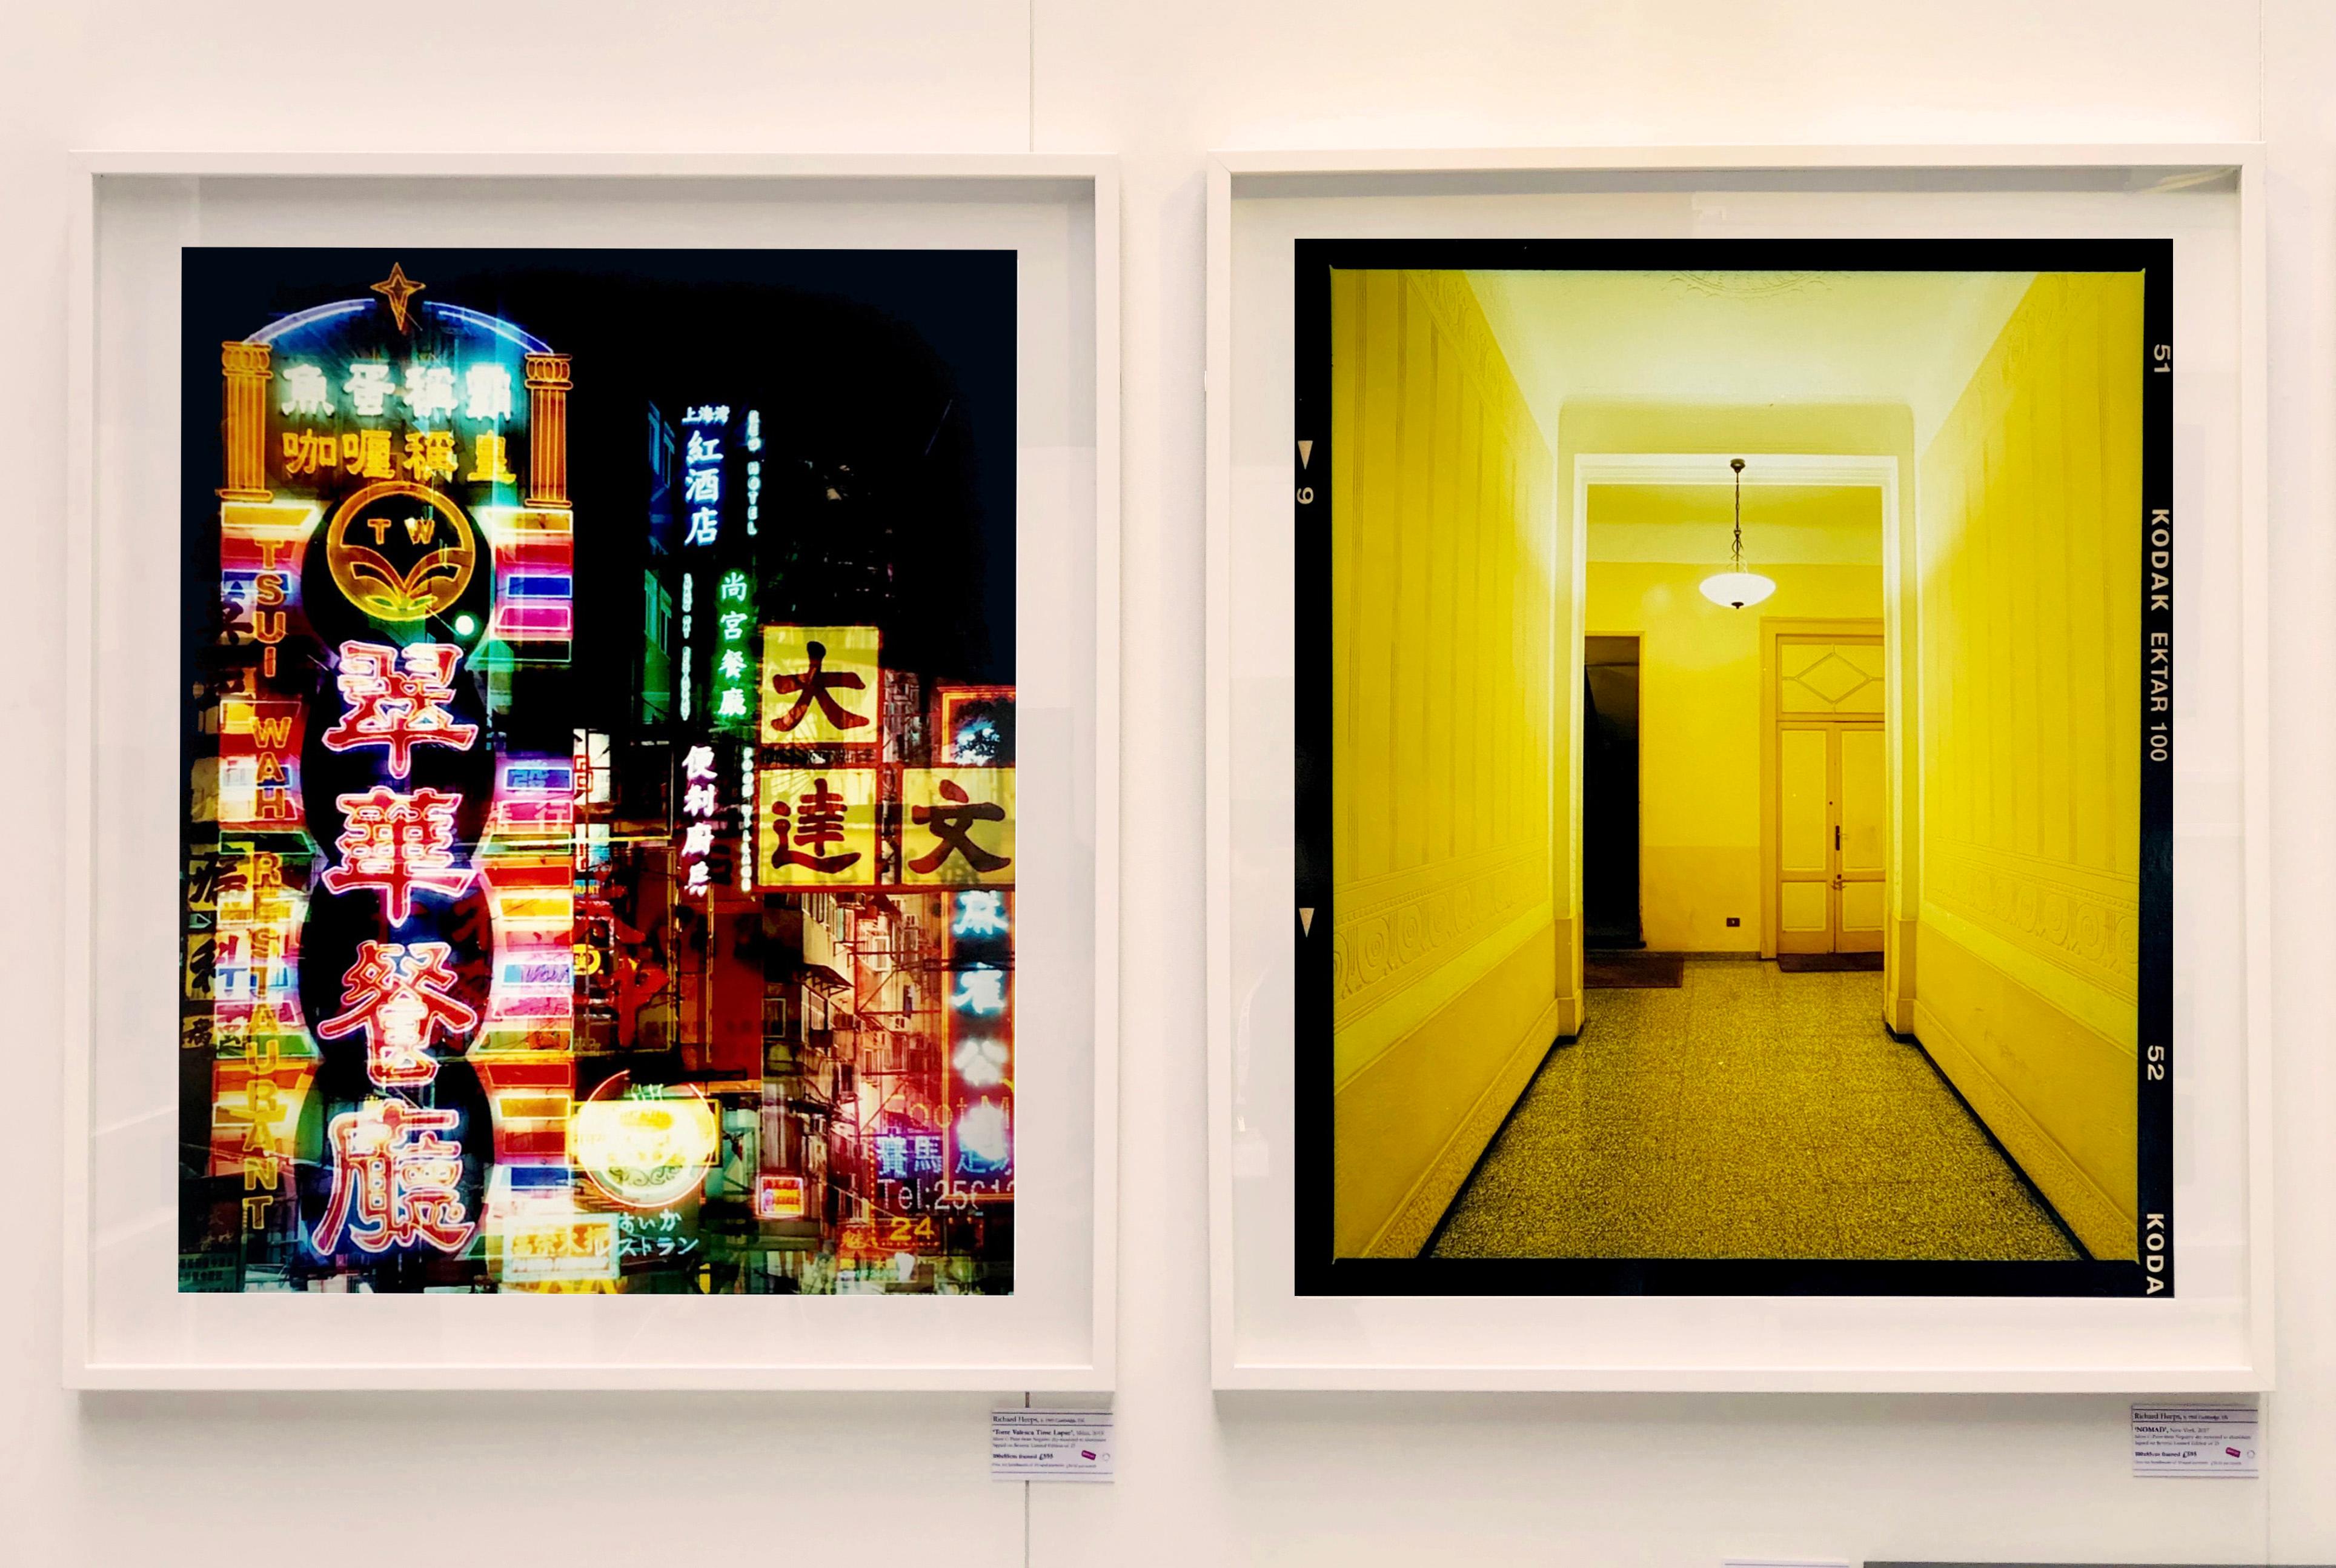 Yellow Corridor, aus Richard Heeps Serie A Short History of Milan, die als Sonderprojekt für die Affordable Art Fair Milan 2018 entstand. Es wurde gut aufgenommen, und das Kunstwerk ist bei Kunstkäufern auf der ganzen Welt beliebt geworden. Richard